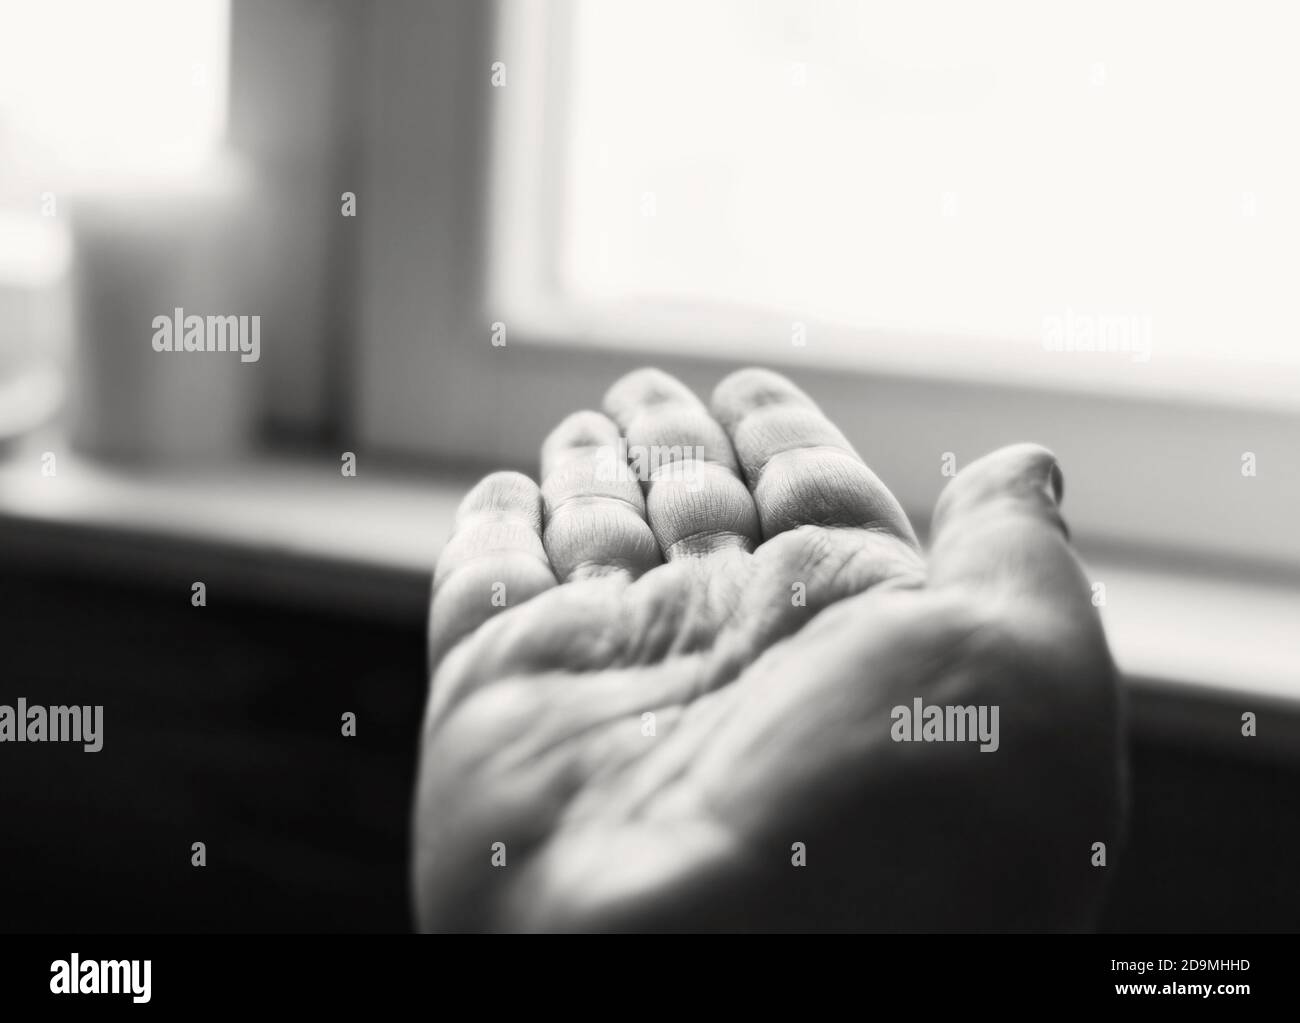 La mano umana aperta viene girata verso la finestra di giorno in giorno bianco e nero Foto Stock